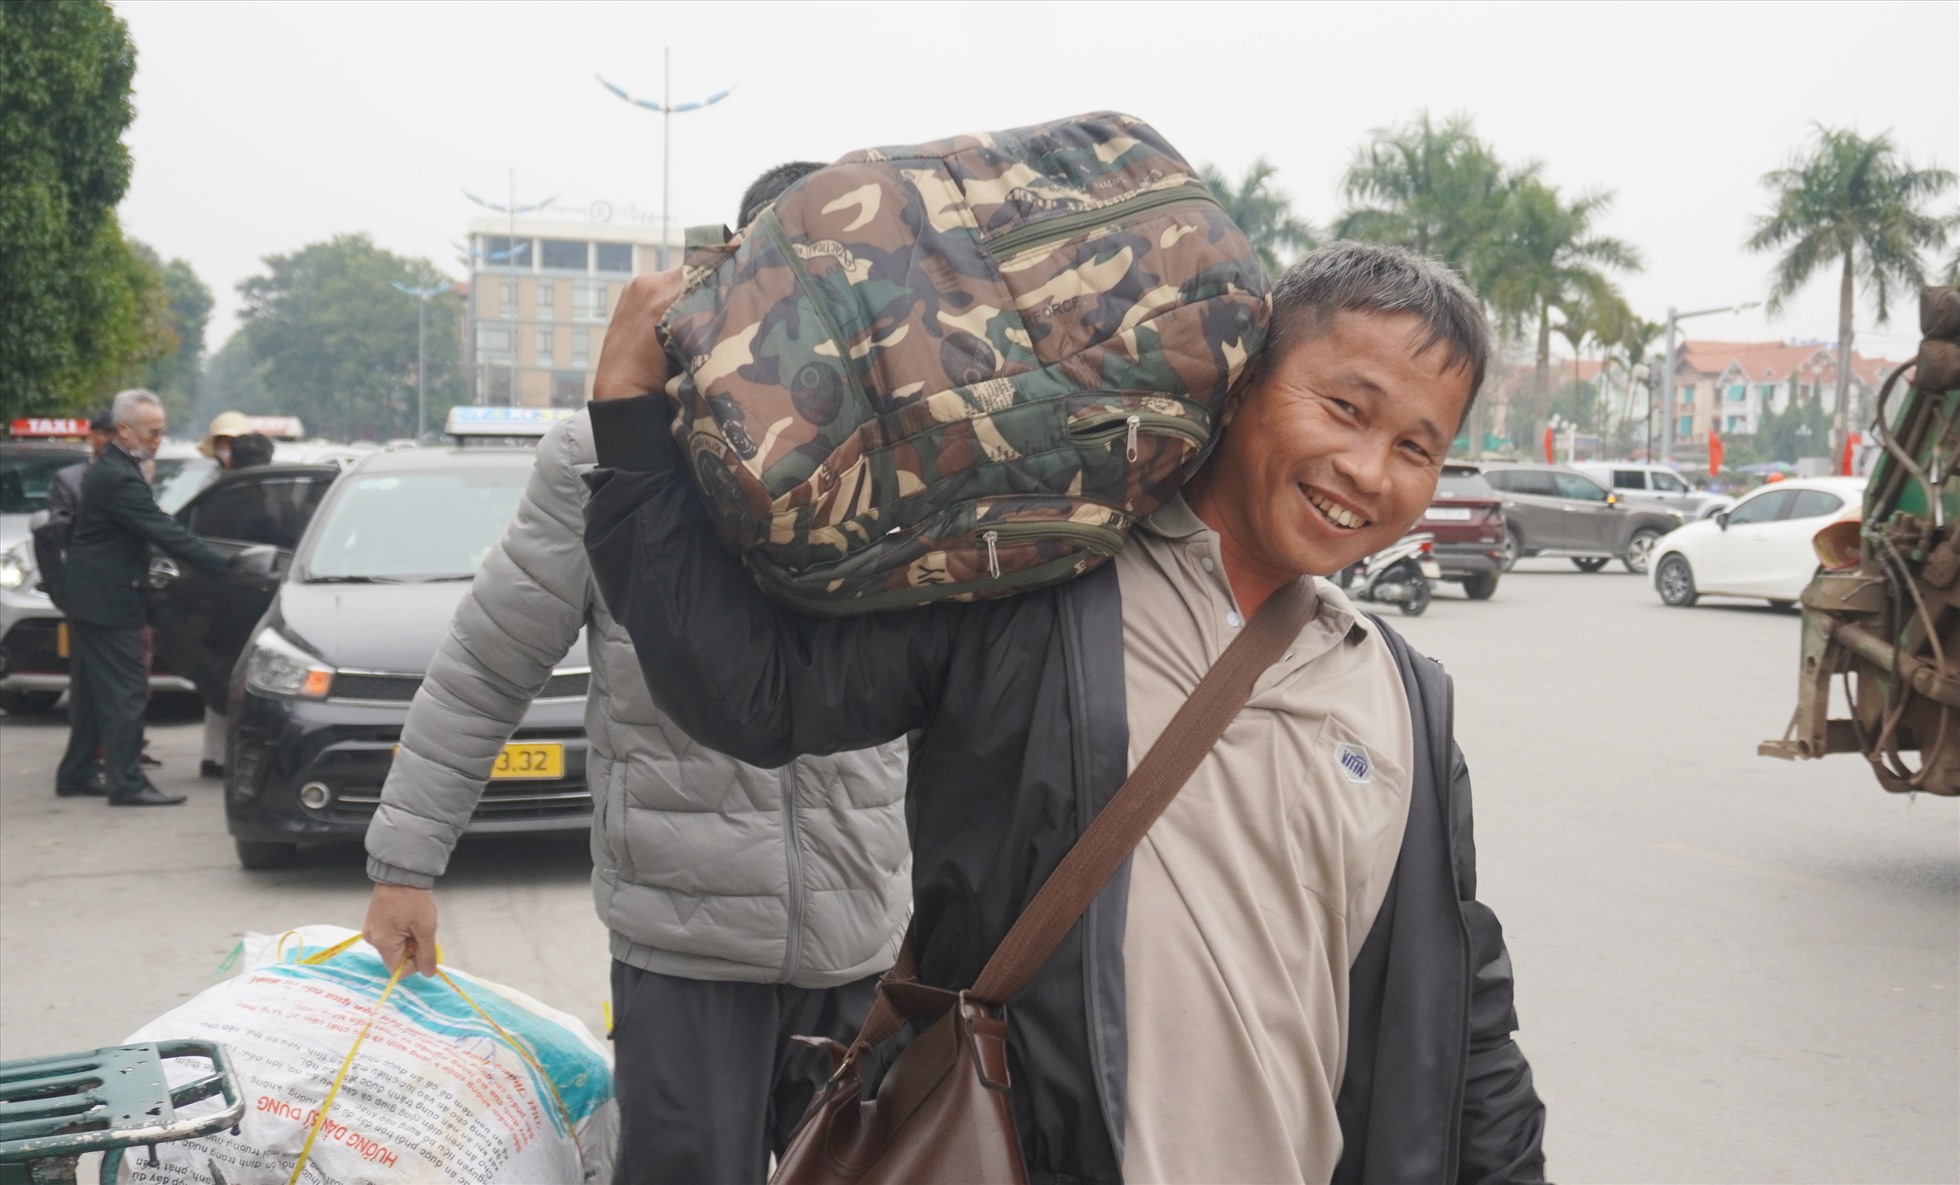 Anh Lê Quốc Xuân (làm việc ở tỉnh Ninh Thuận) sau khi xuống ga đã nhanh chóng mang vác đồ đạc, ra đón xe taxi về quê (ở huyện Hoằng Hóa, Thanh Hóa) đón Tết. Ảnh: Quách Du